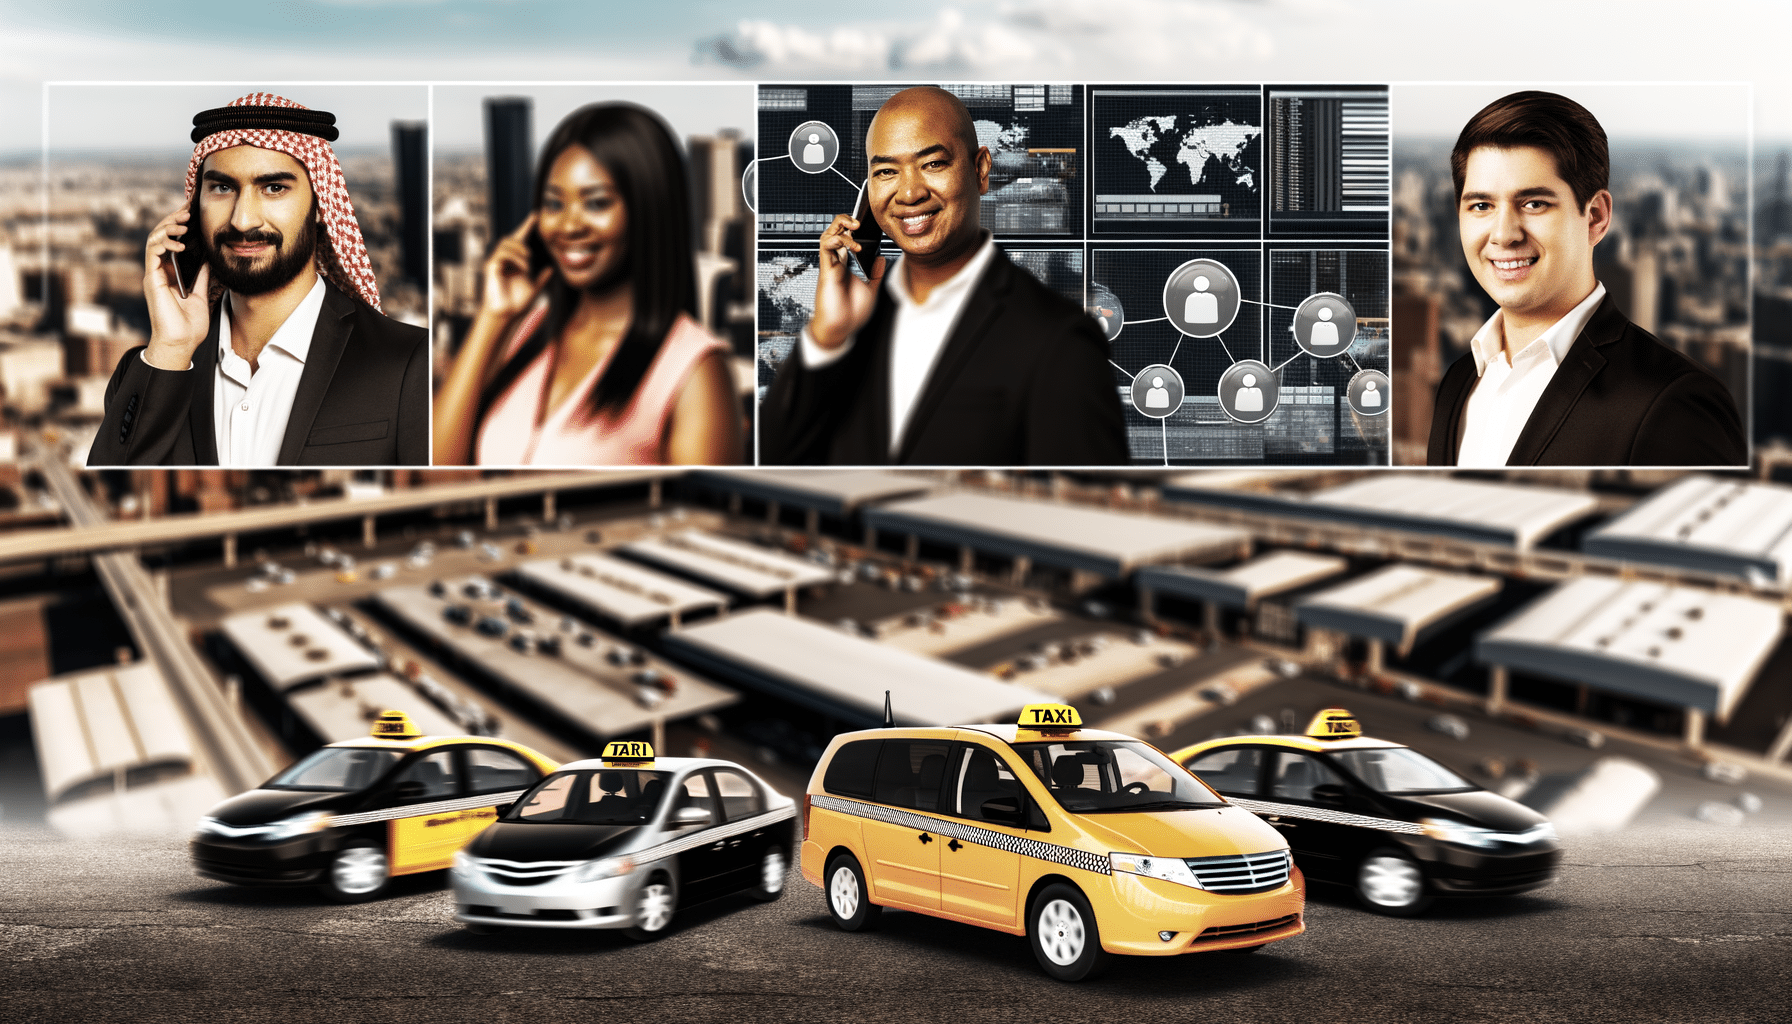 Gerenciamento de frota de táxis com tecnologia de comunicação por rádio